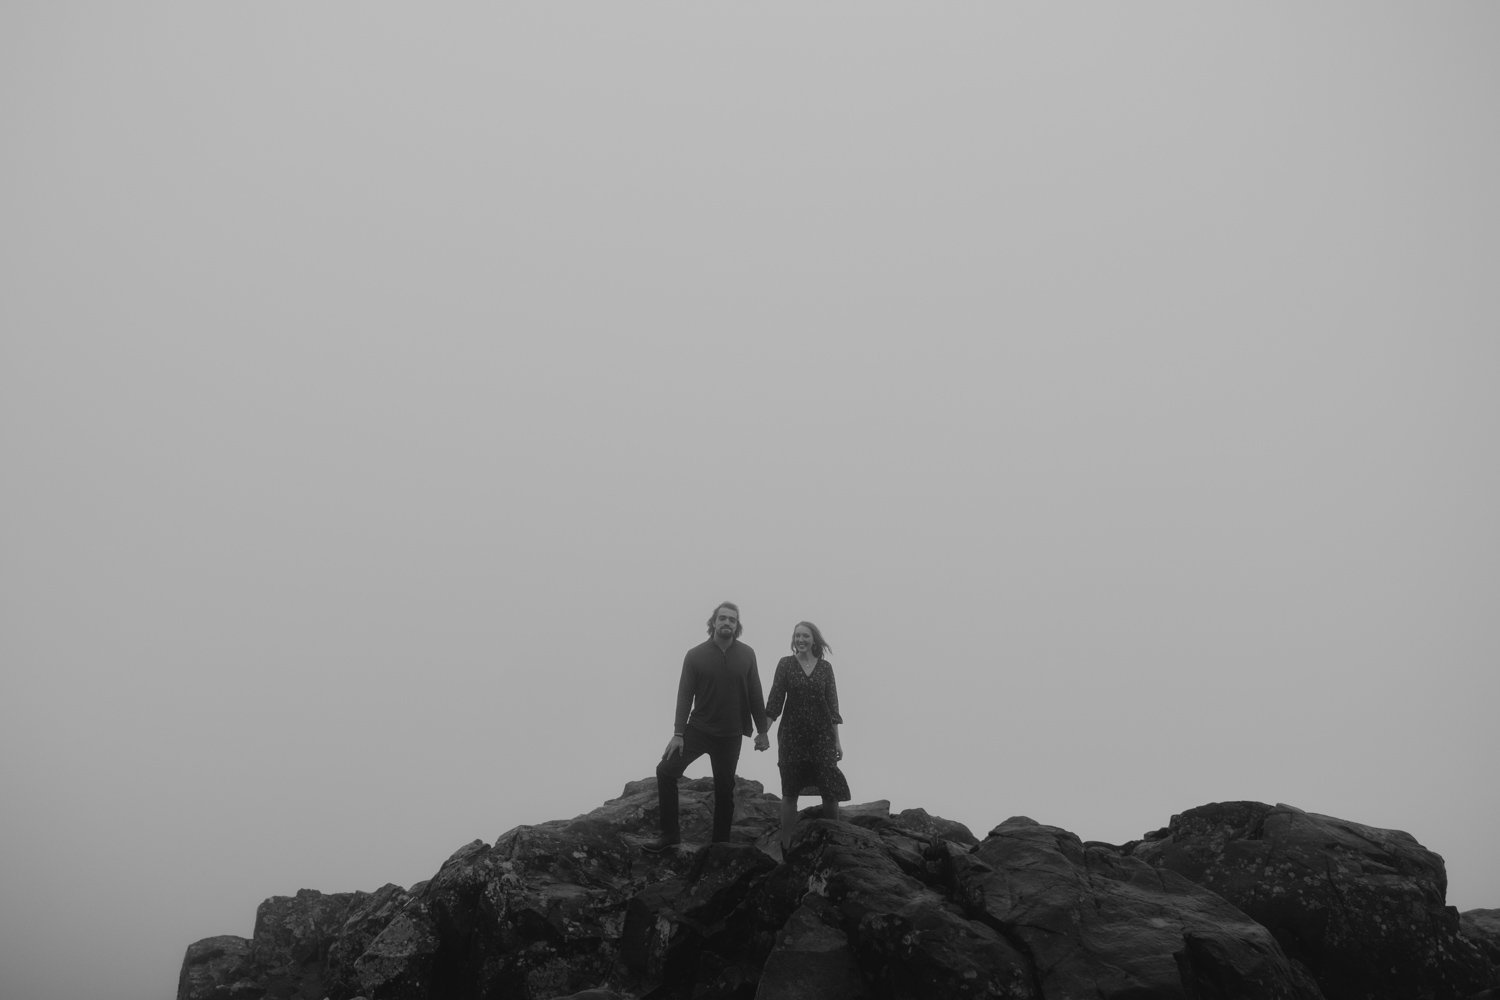 Foggy stony man mountain engagement photo